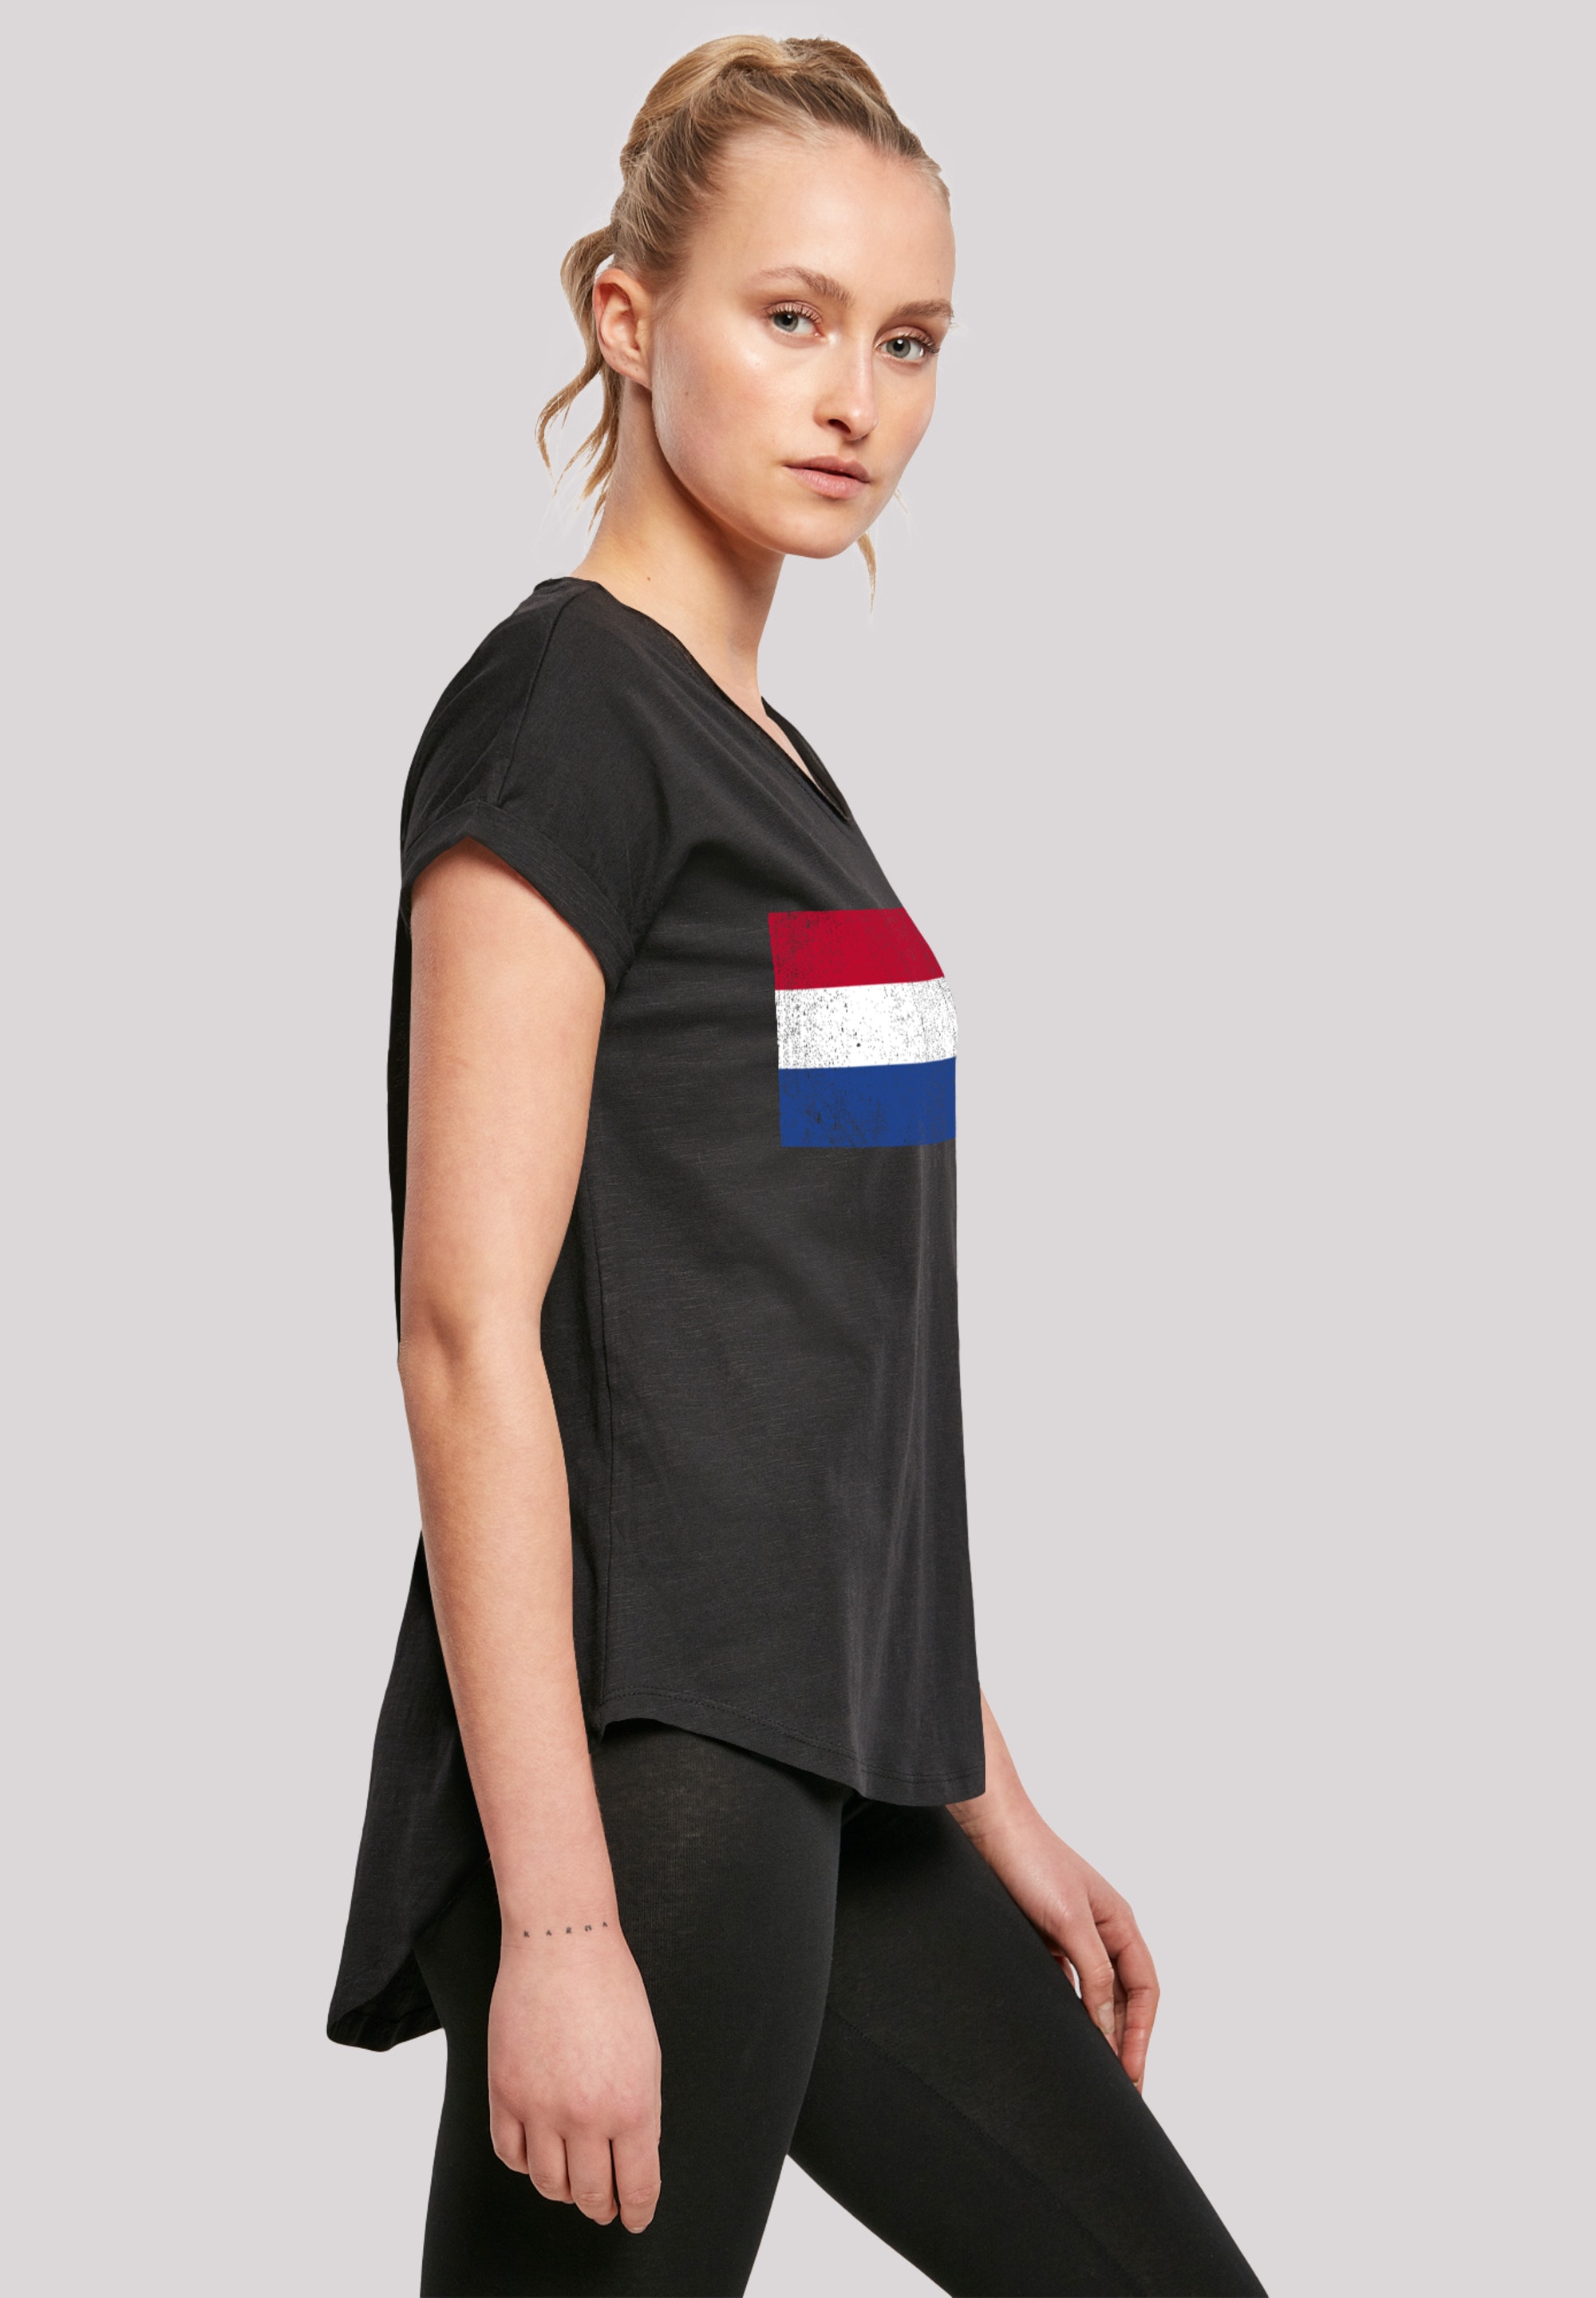 Flagge Print Holland shoppen NIederlande »Netherlands distressed«, T-Shirt F4NT4STIC